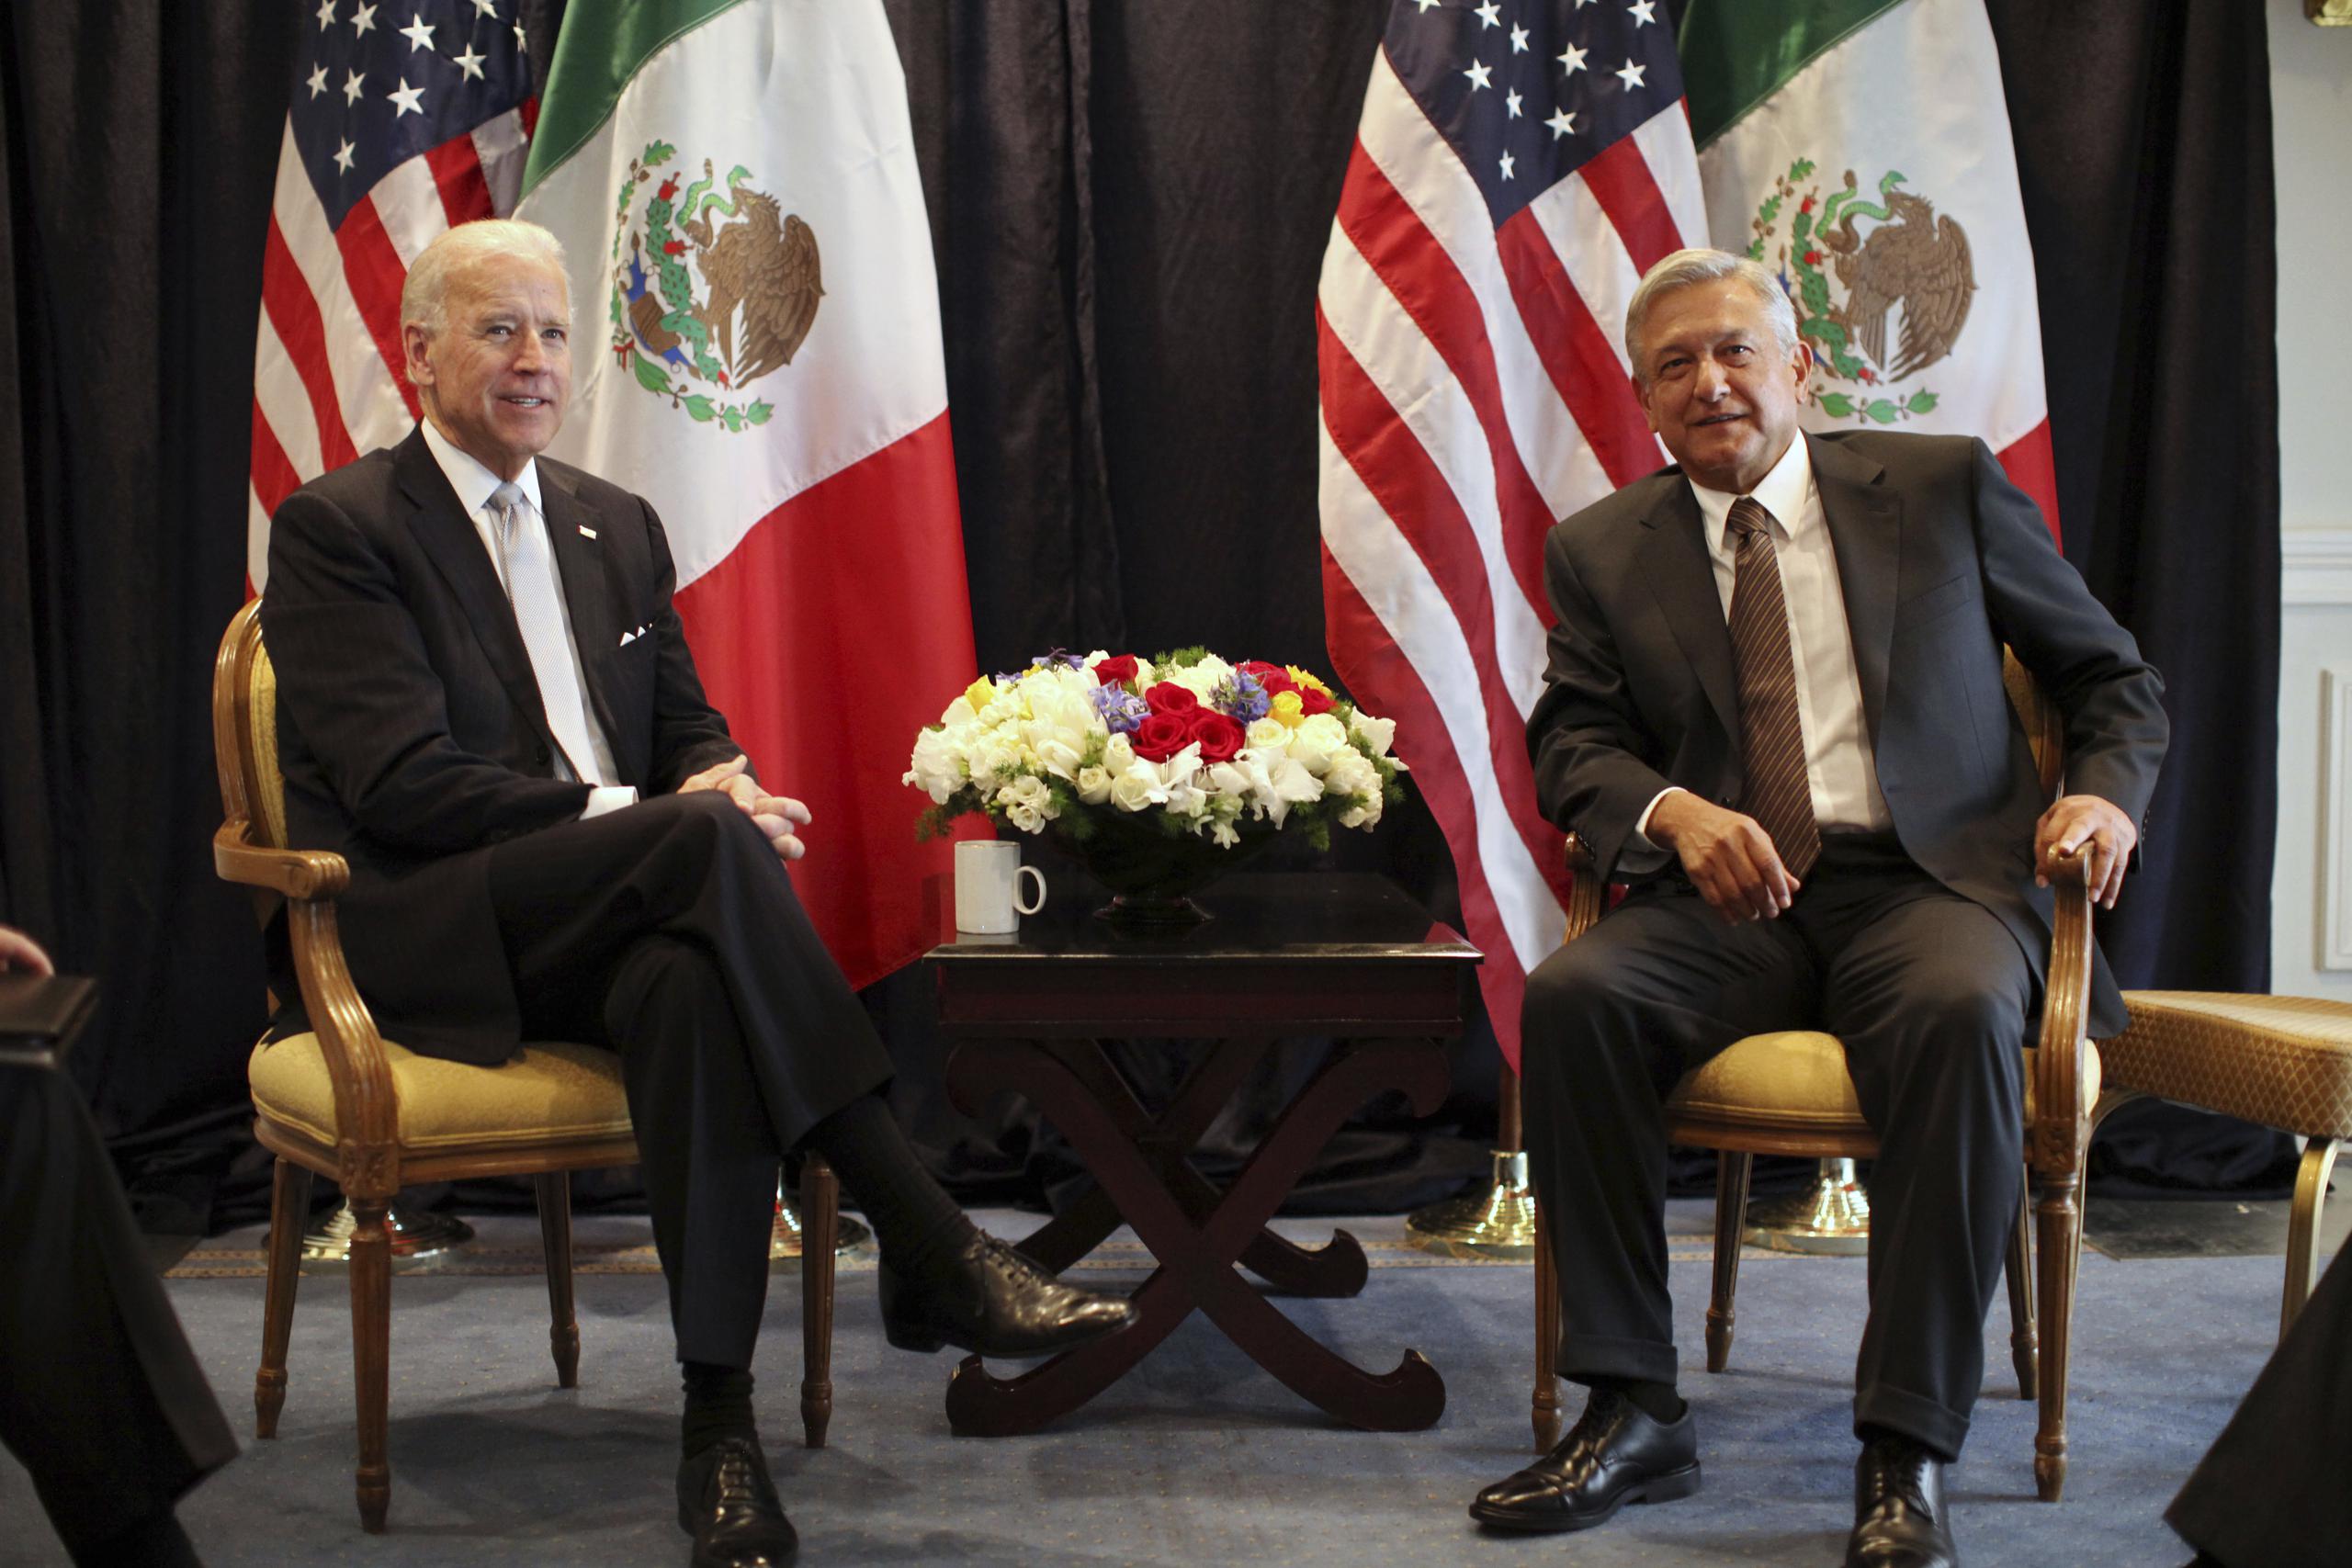 En la conferencia de prensa del lunes, López Obrador confirmó que en la reunión se discutirá el cambio climático, pero subrayó que “Biden es respetuoso de nuestra soberanía” dado que él no ve “a México como el patio trasero de Estados Unidos”.